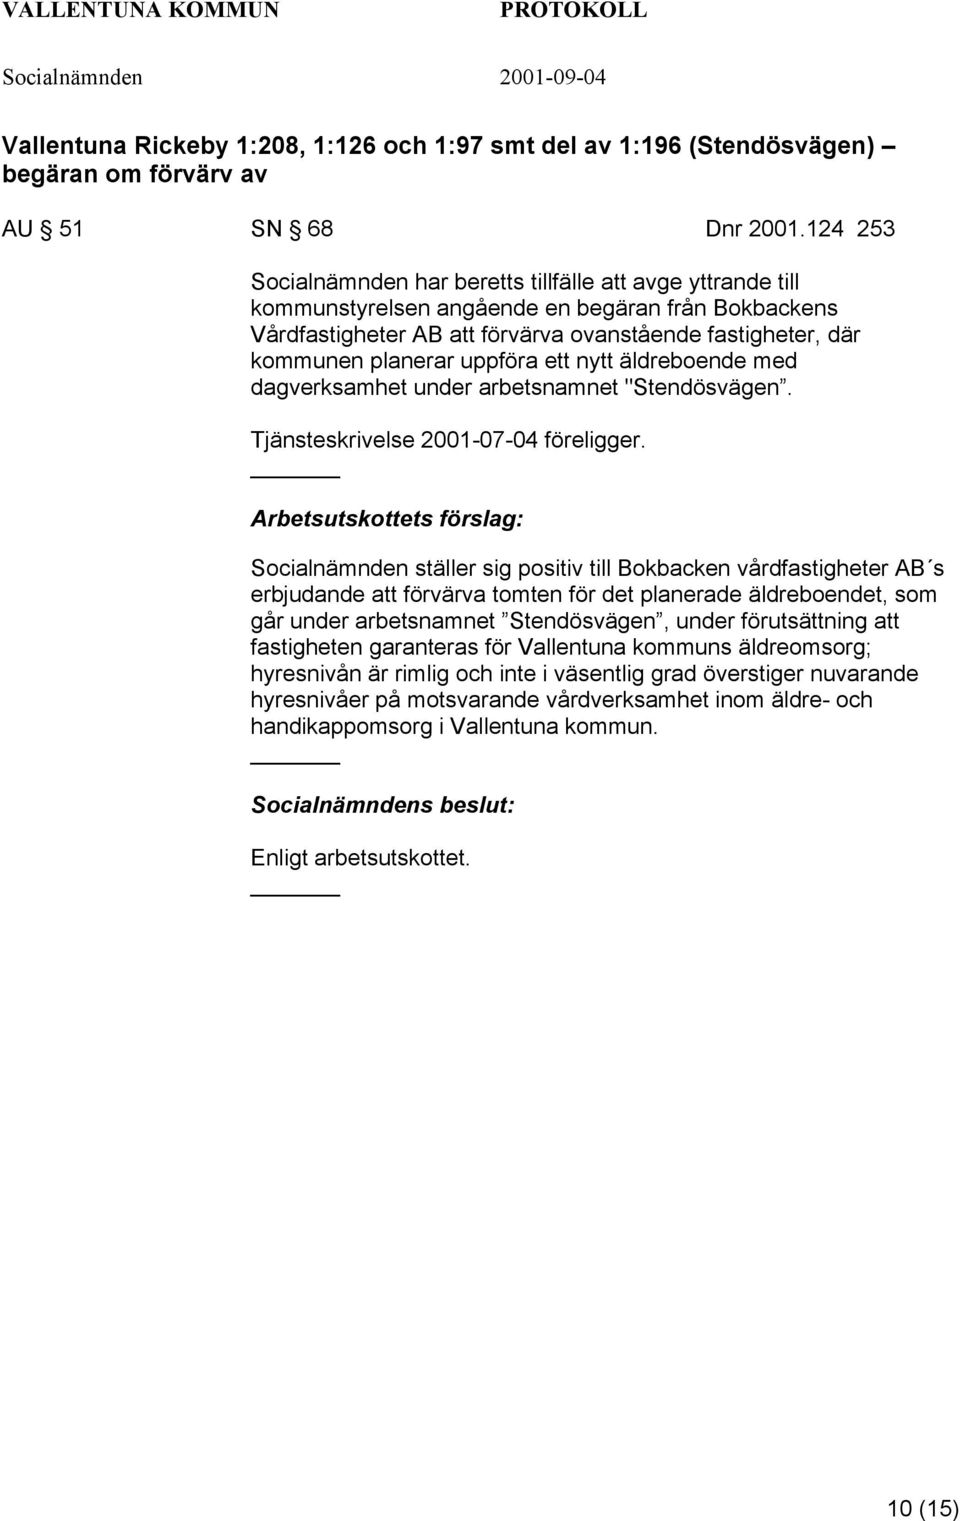 uppföra ett nytt äldreboende med dagverksamhet under arbetsnamnet "Stendösvägen. Tjänsteskrivelse 2001-07-04 föreligger.